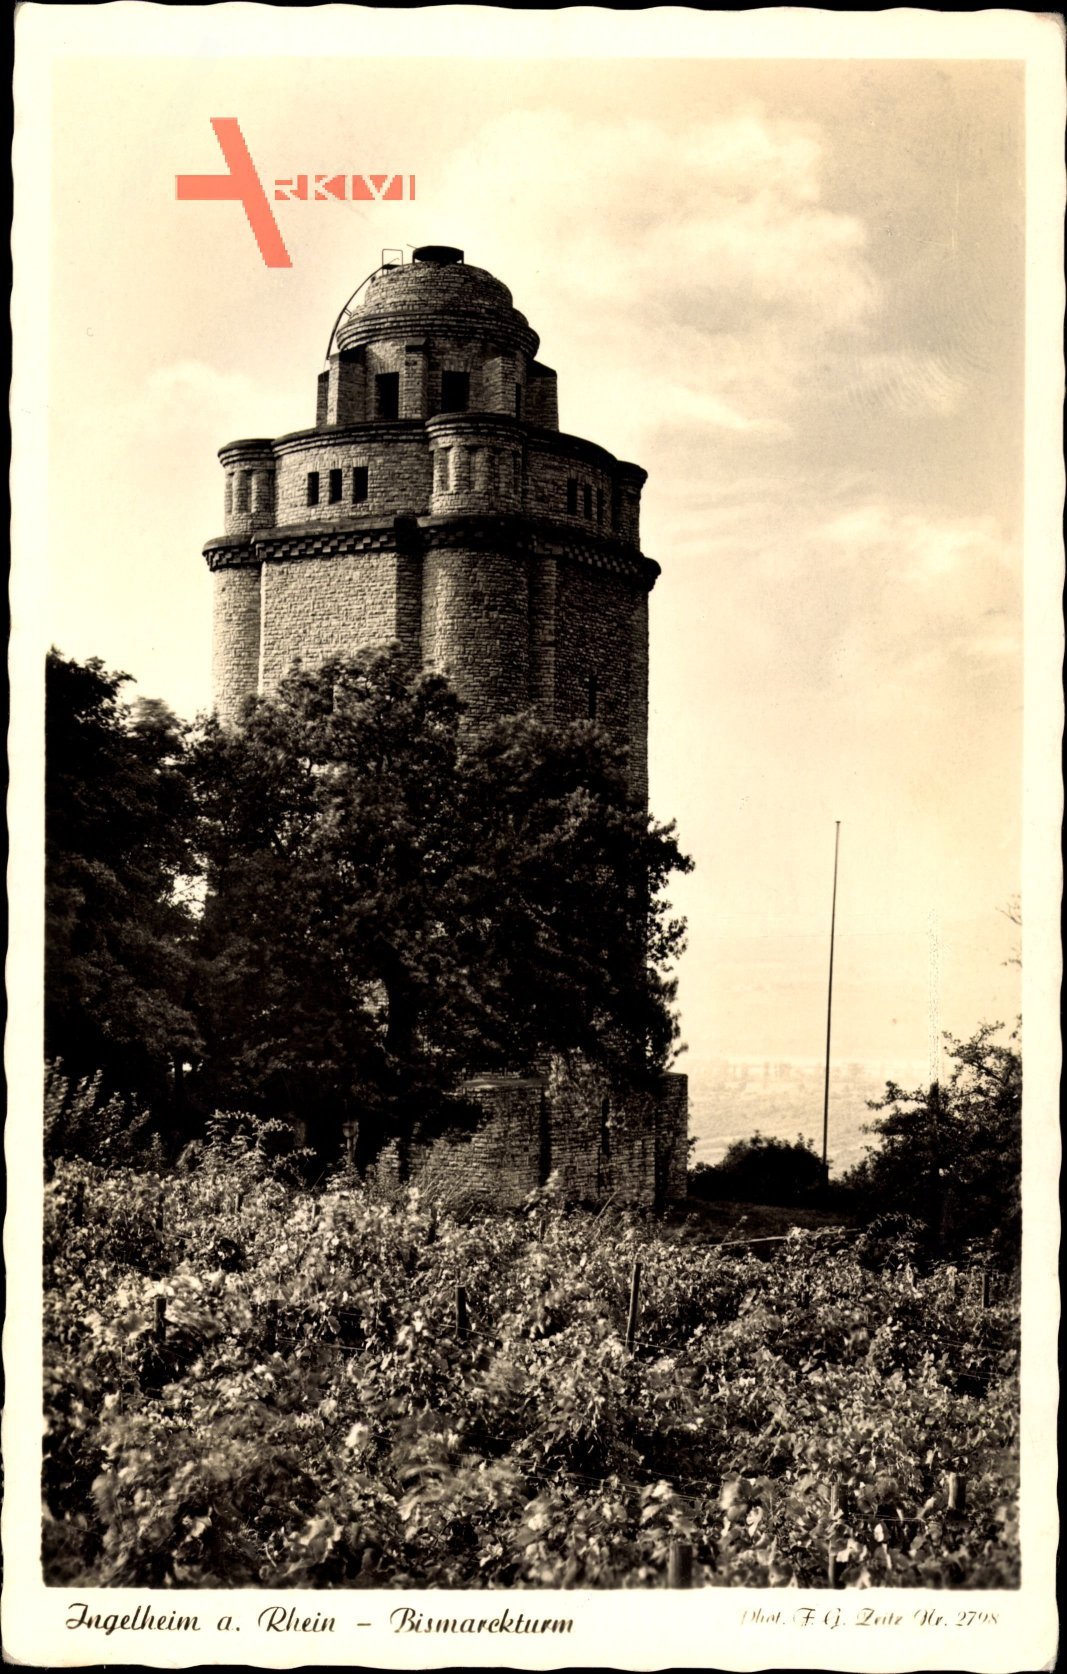 Ingelheim am Rhein, Blick auf den Bismarckturm, Weinstöcke